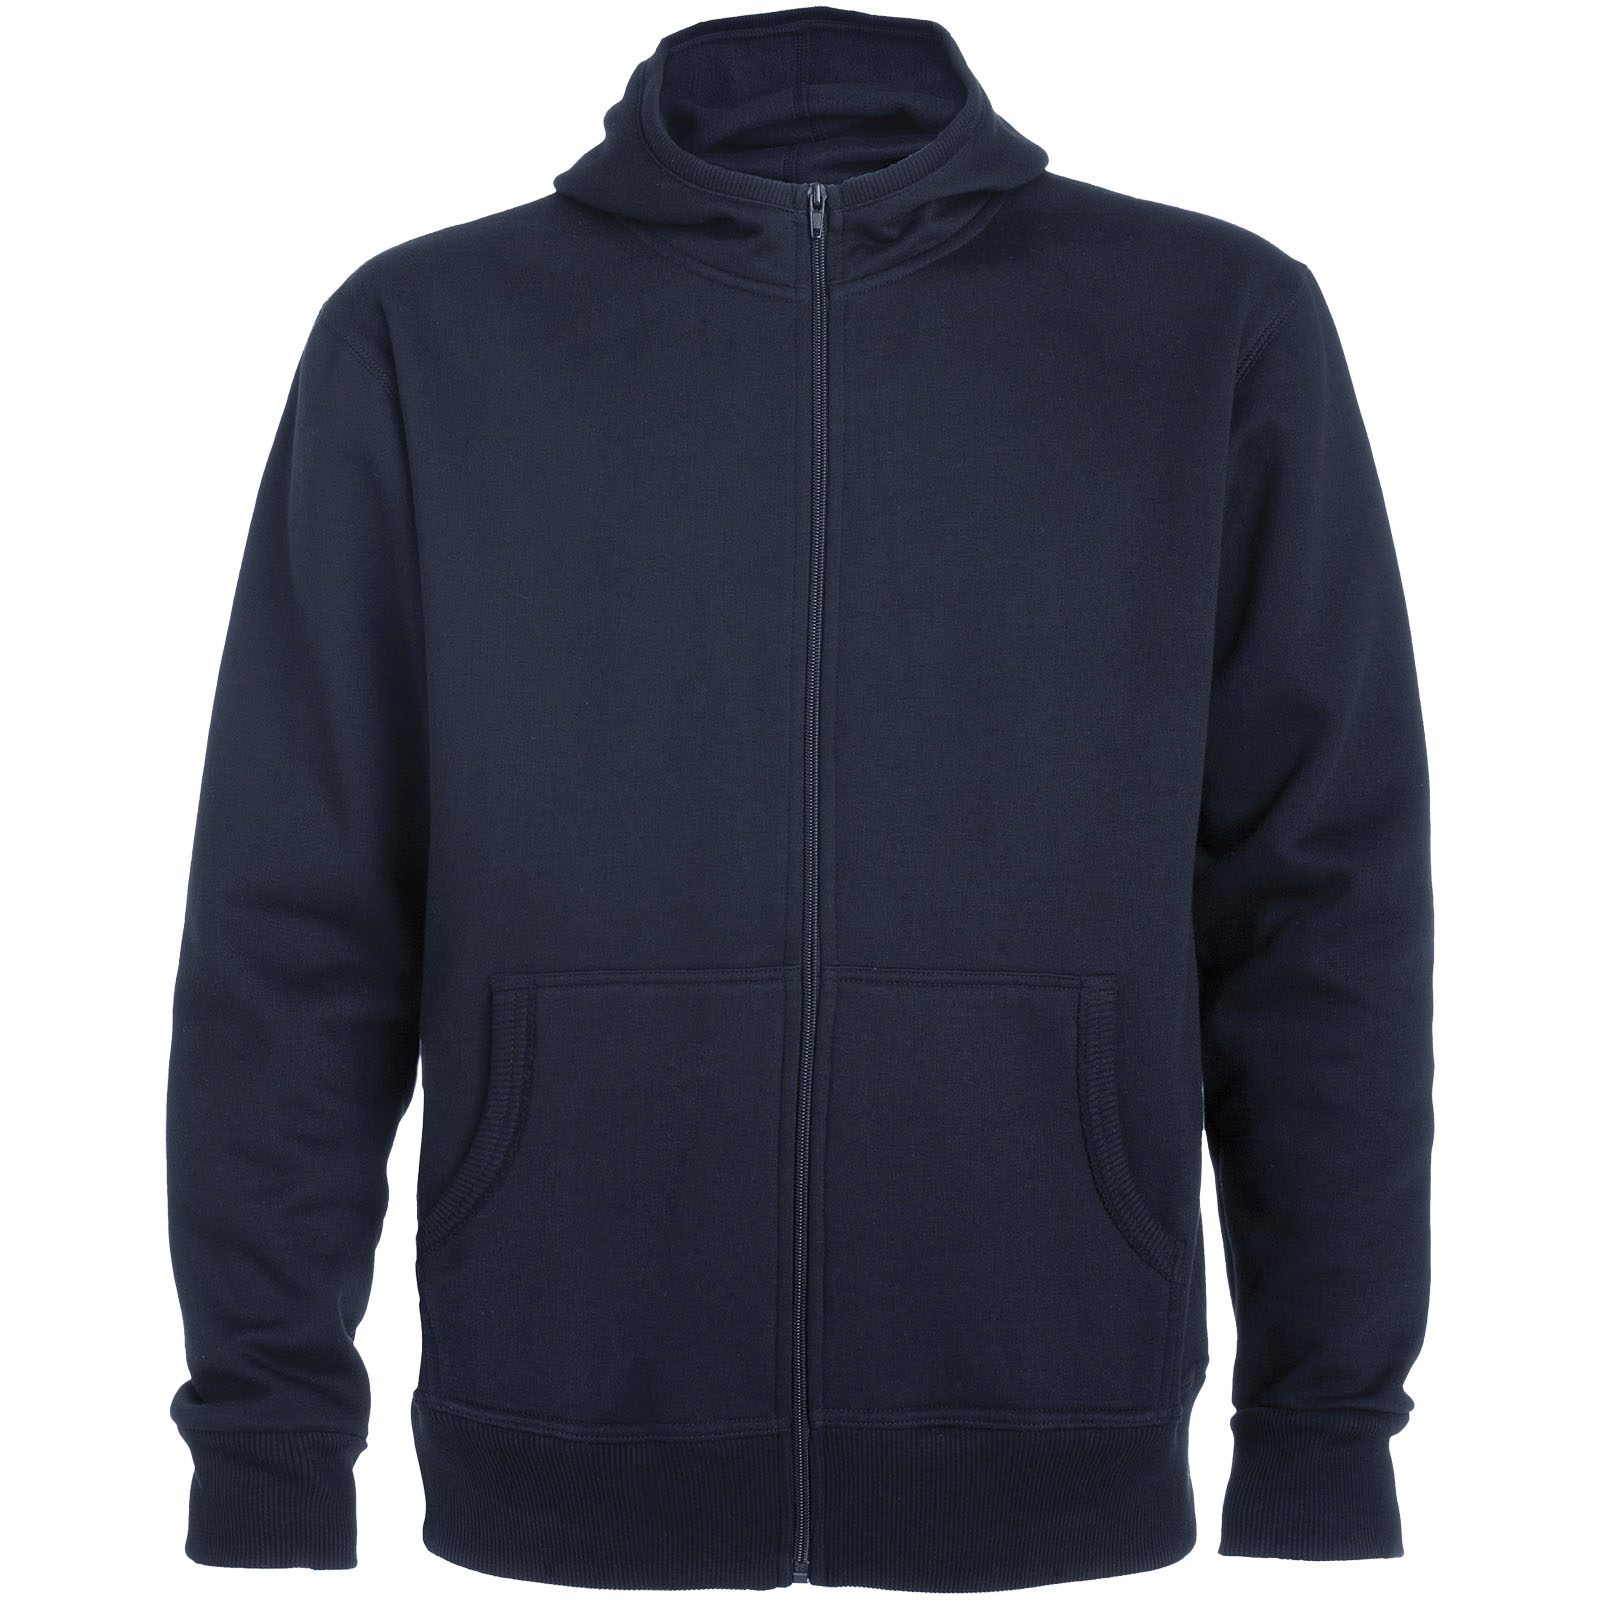 Advertising Hoodies - Montblanc unisex full zip hoodie